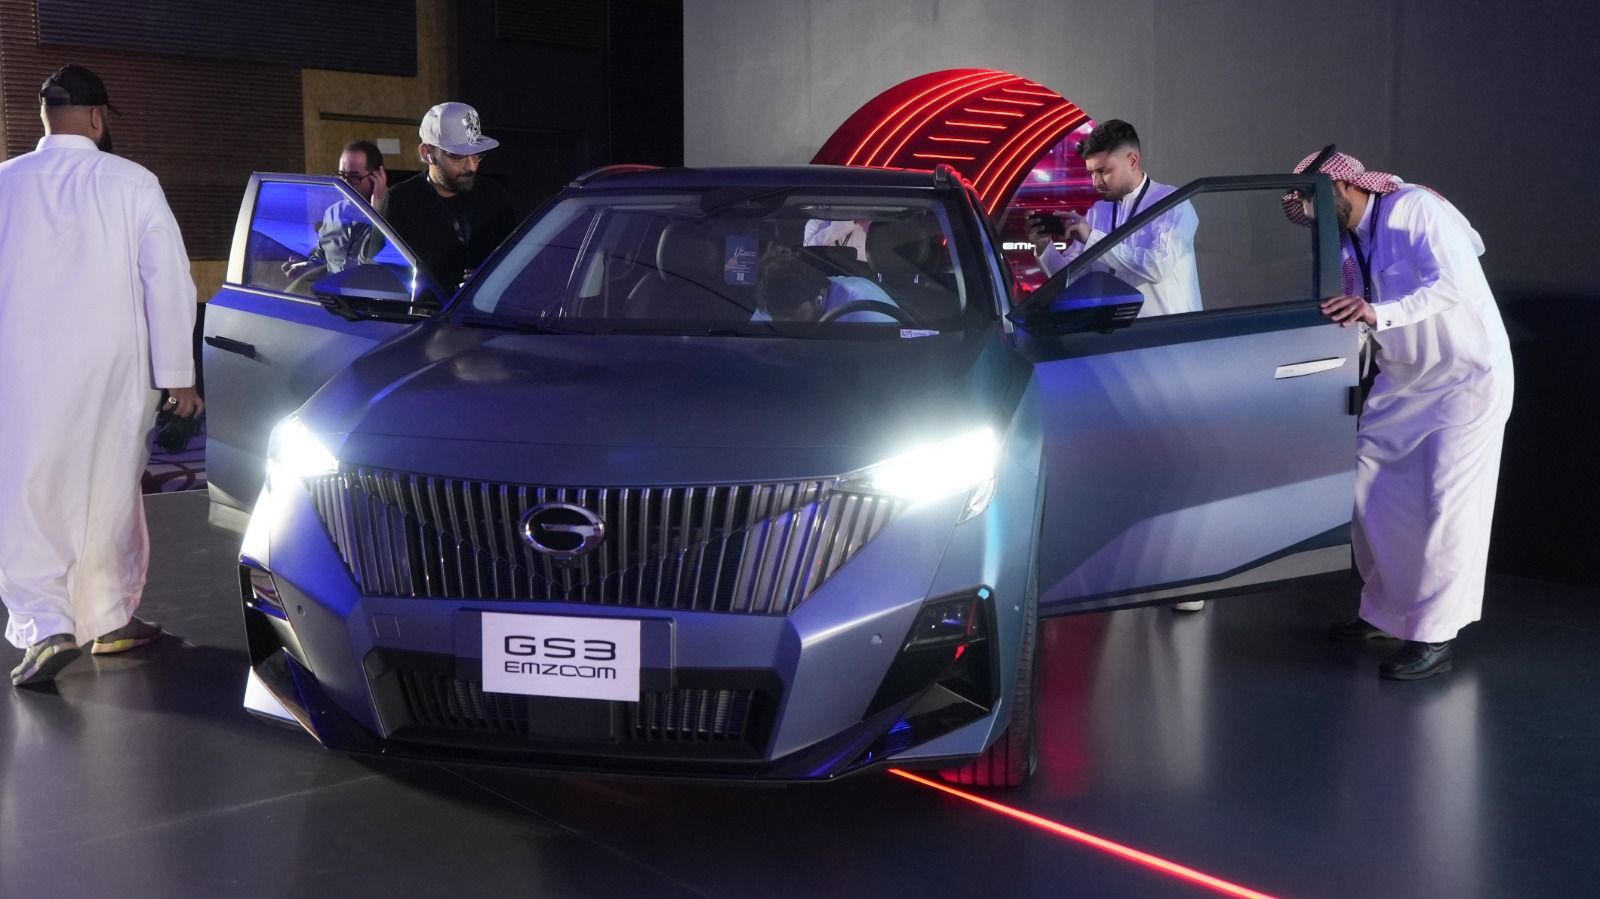 شركة الجميح للسيارات تُعلن عن استراتيجية "جي أيه سي موتور" الجديدة في السوق السعودي وعن إطلاق أحدث موديلاتها جي أيه سي EMKOO و EMZOOM GS3 1